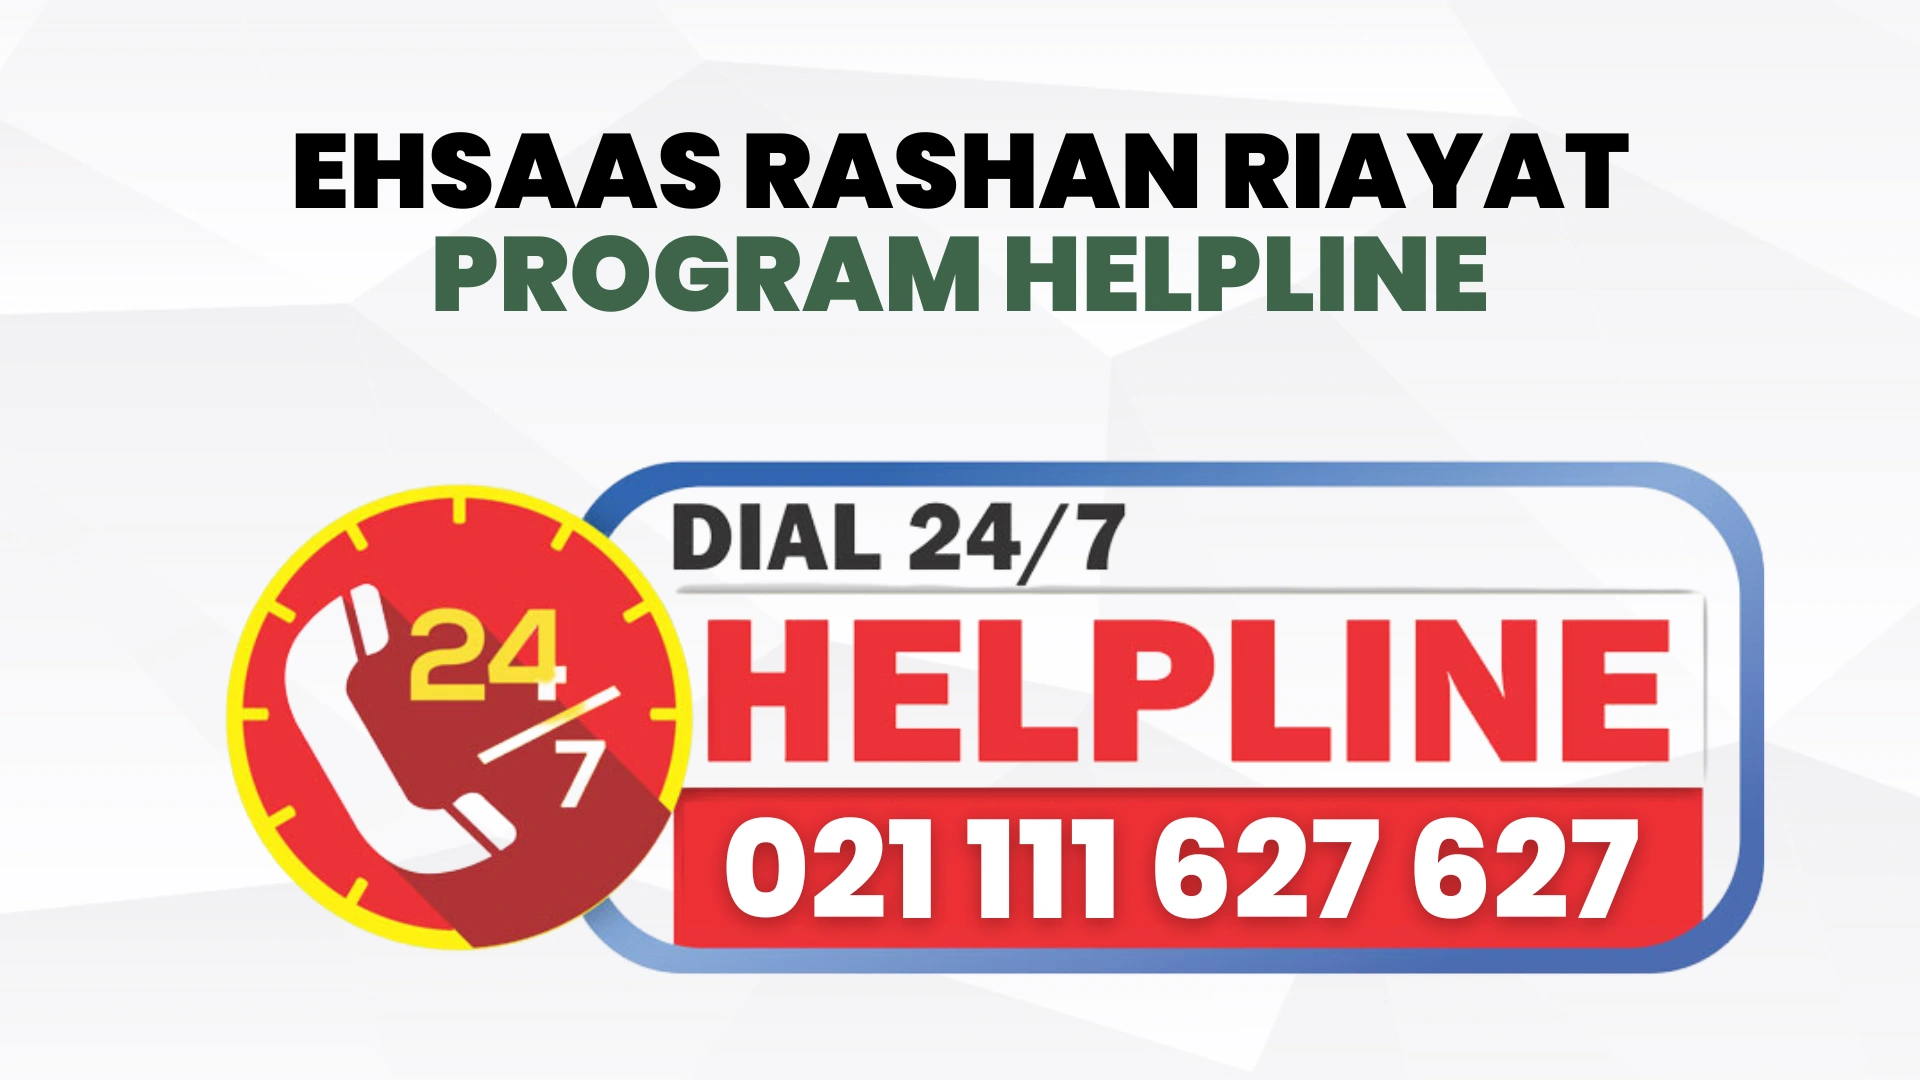 Ehsaas Rashan Riayat Program Helpline